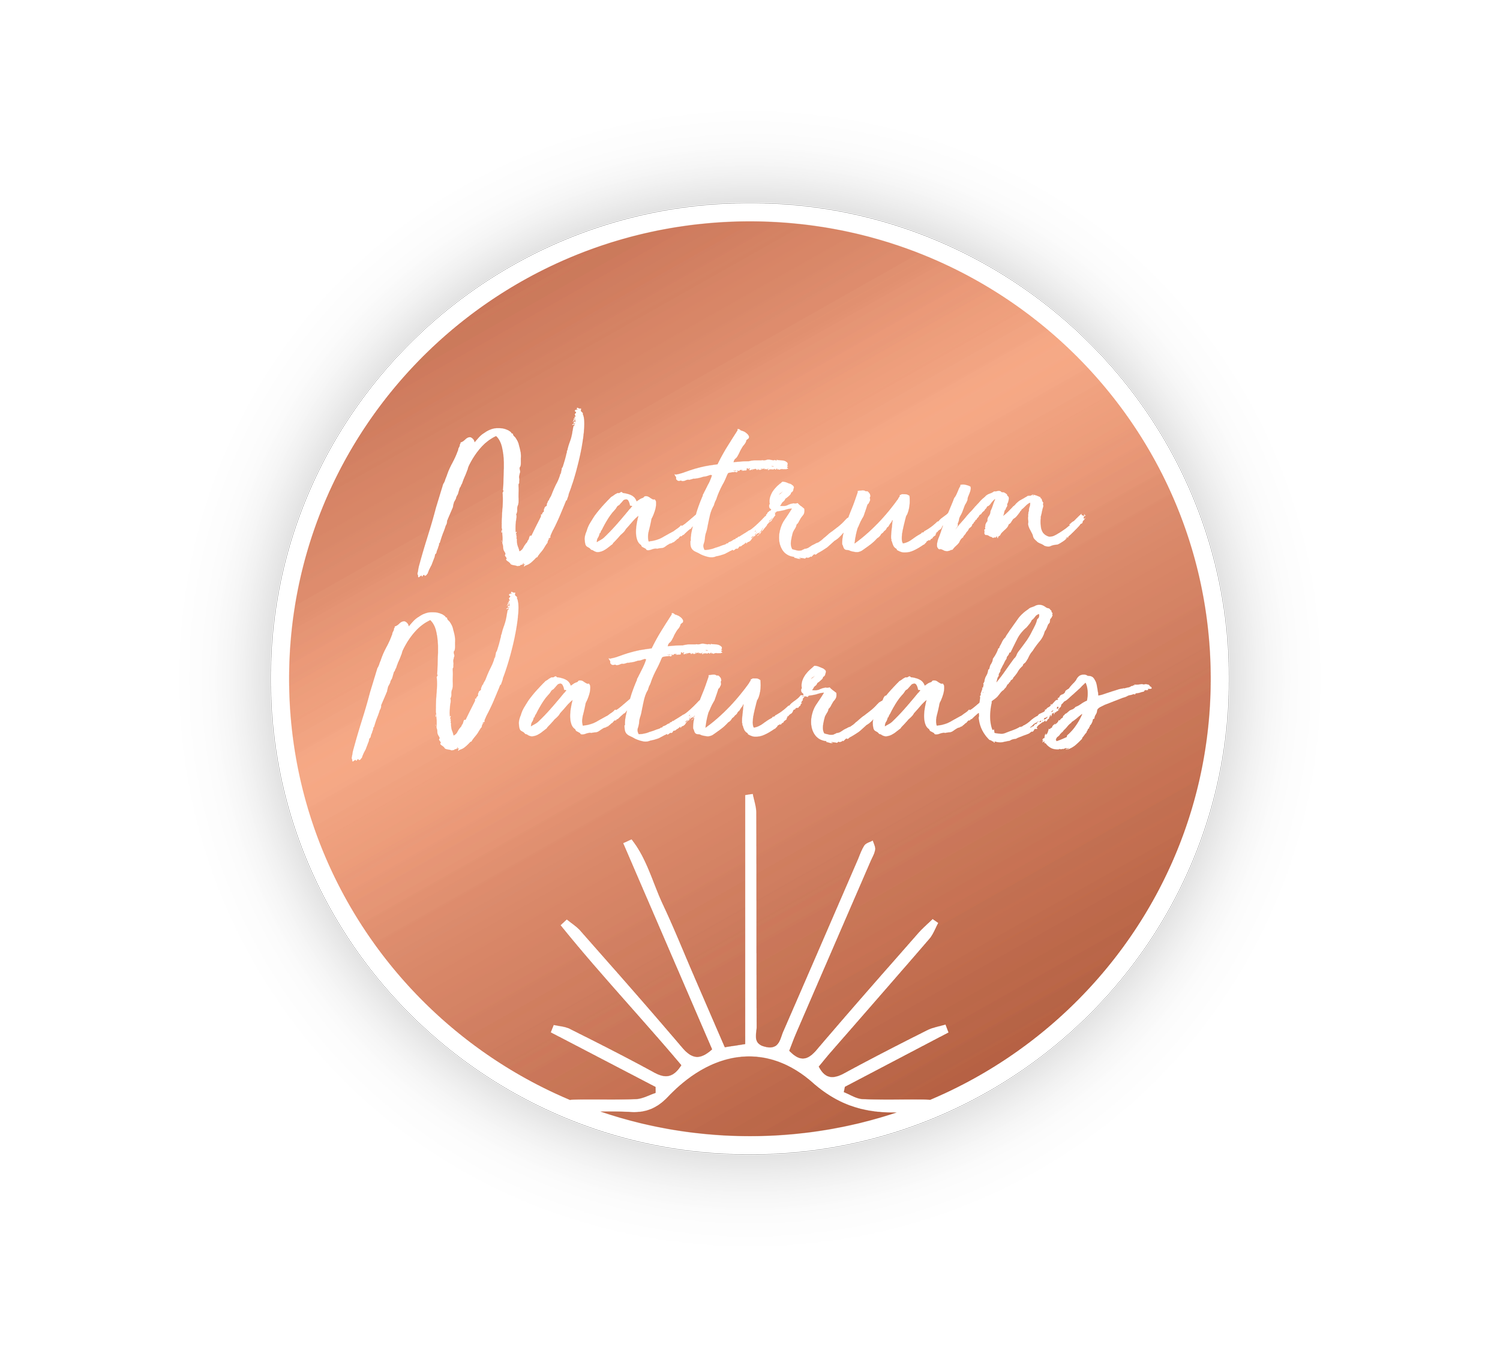 Natrum Naturals